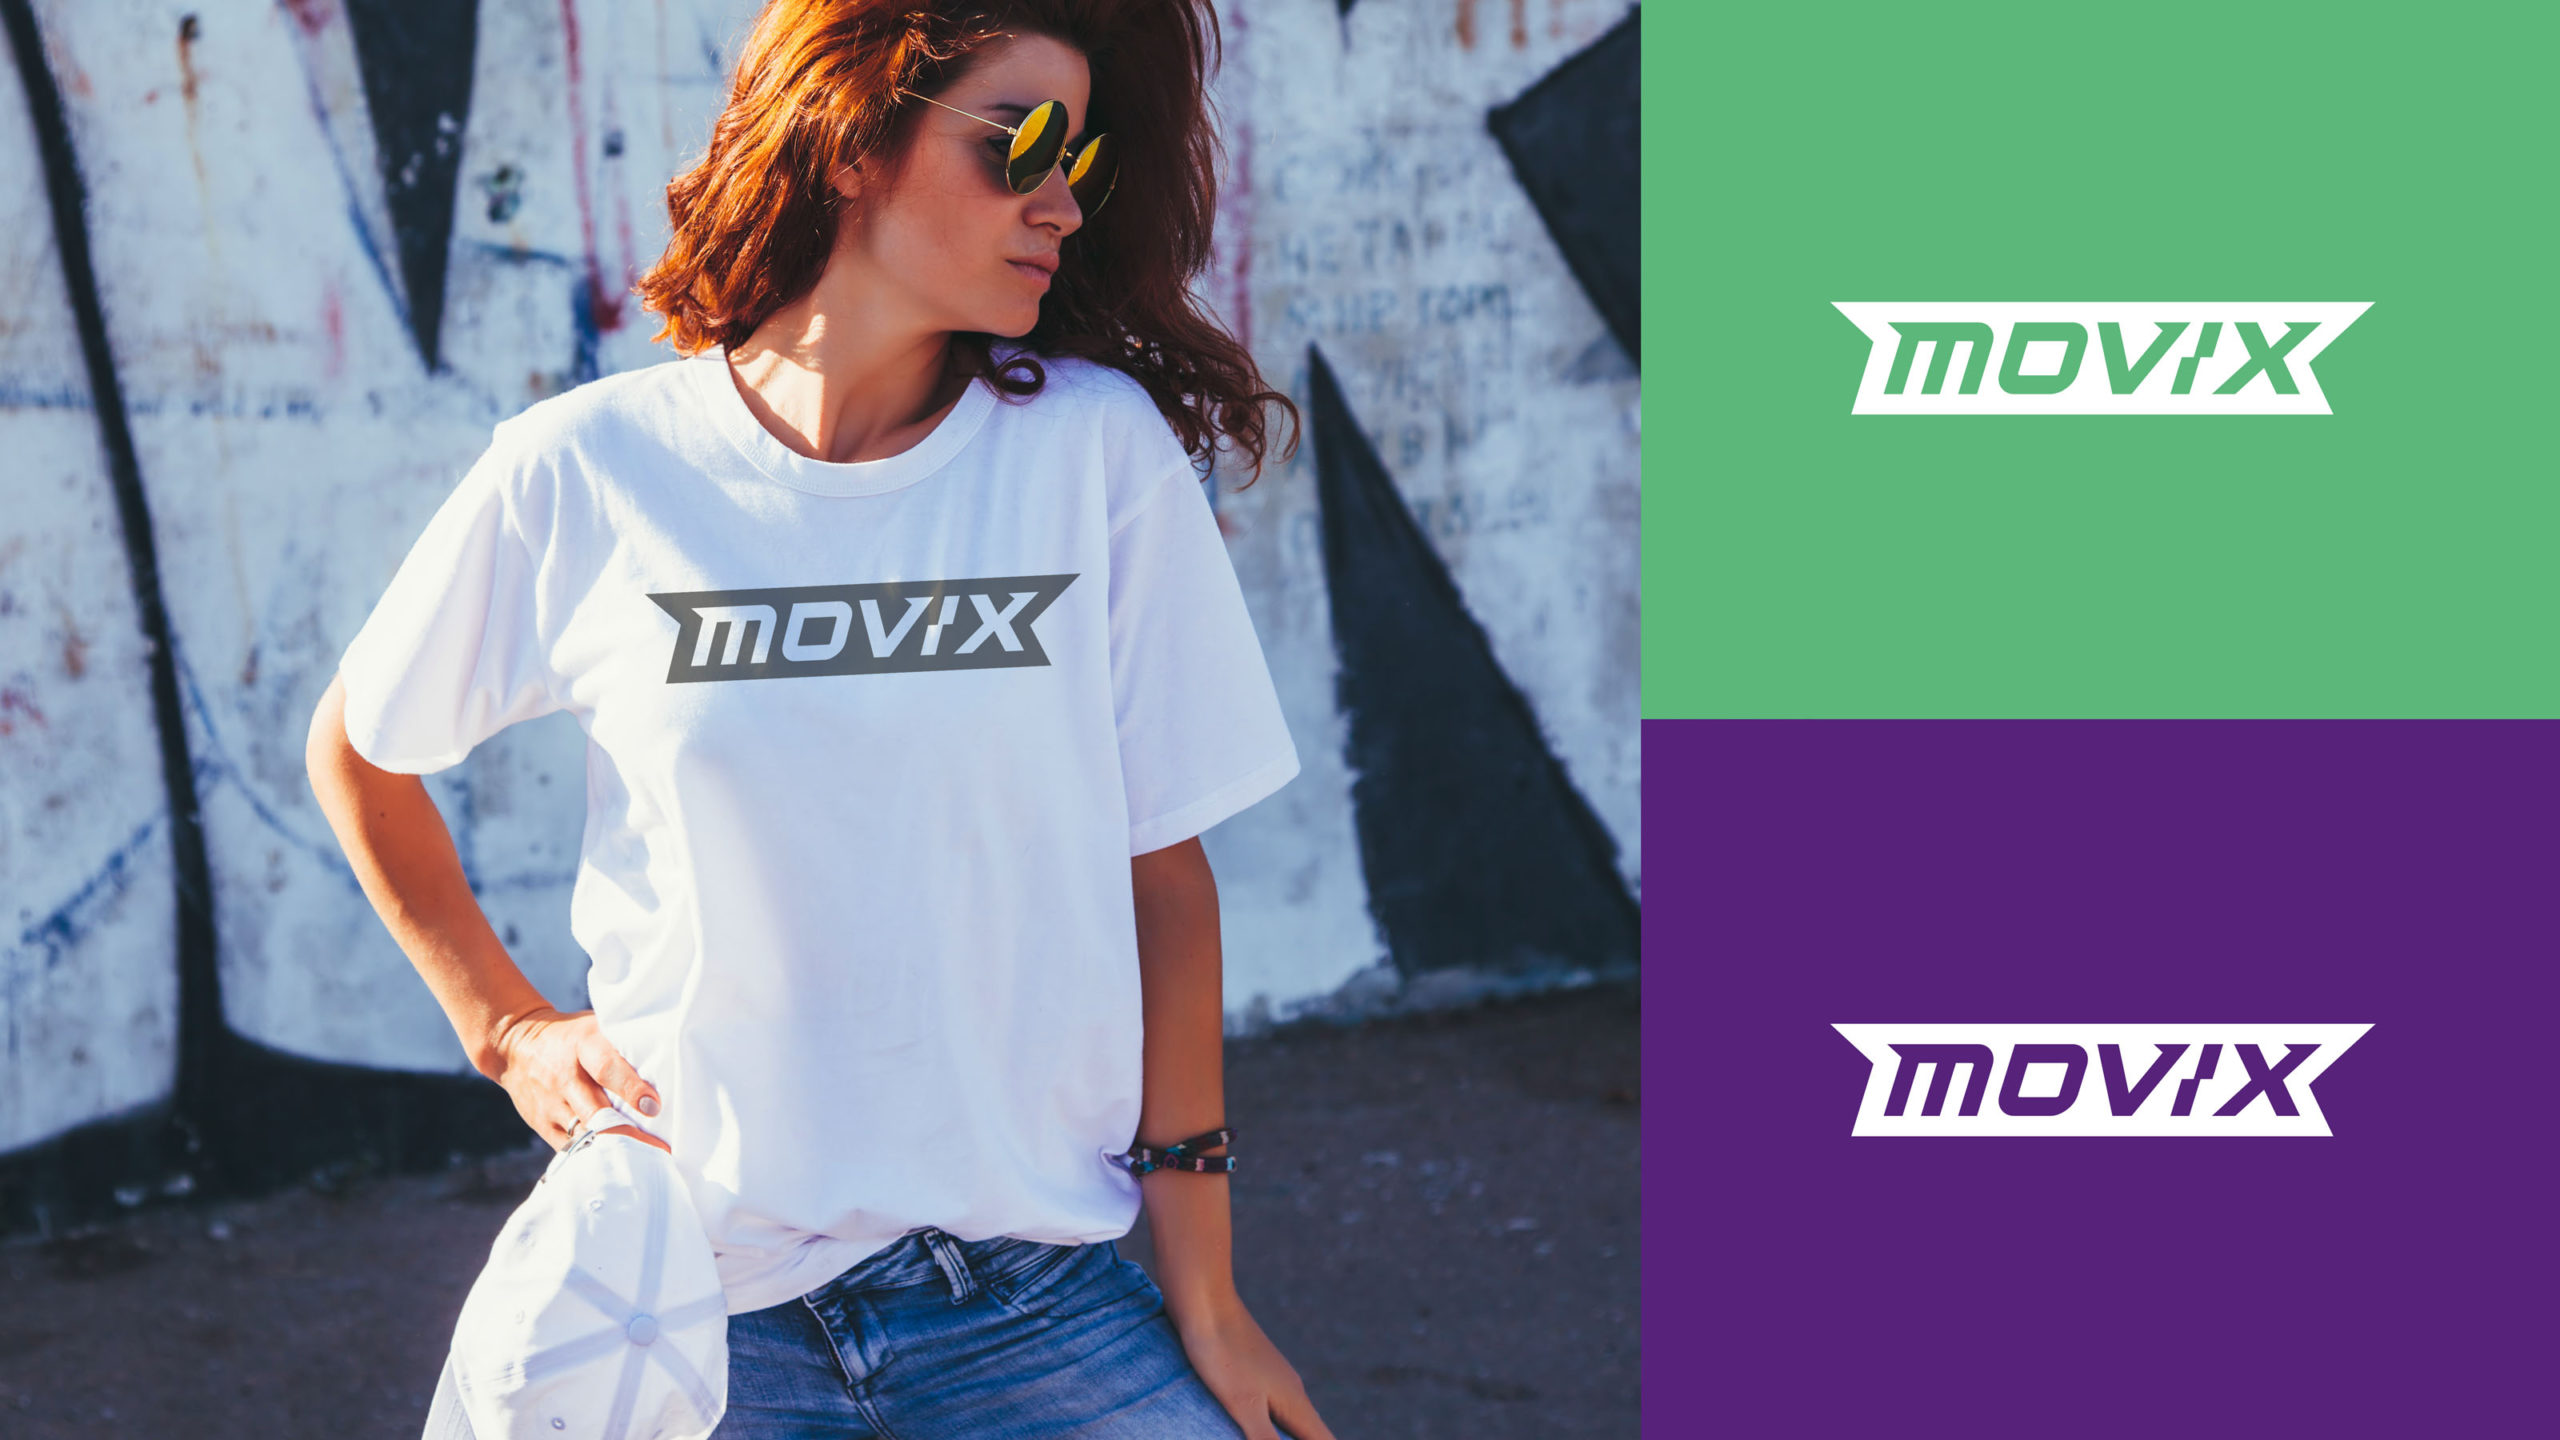 Movix - Kima